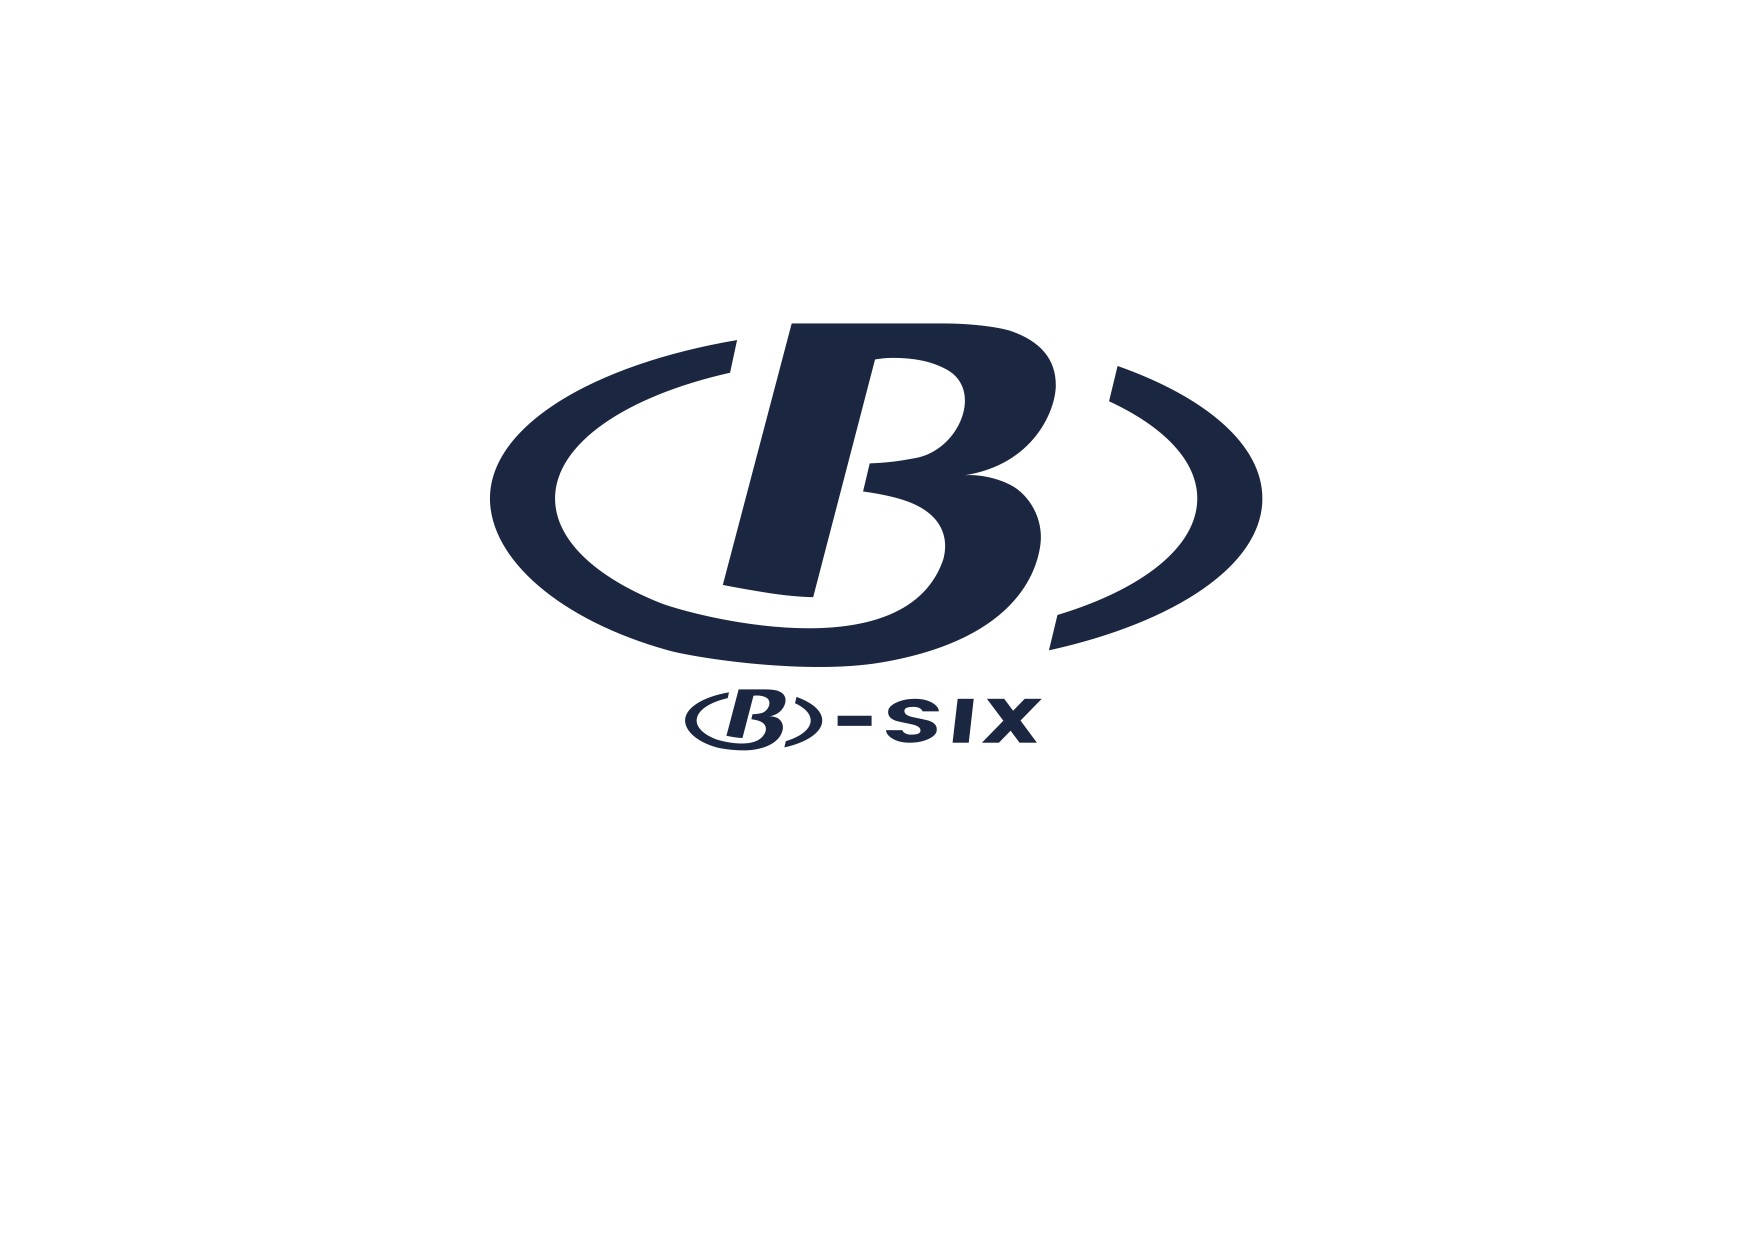 B-Six